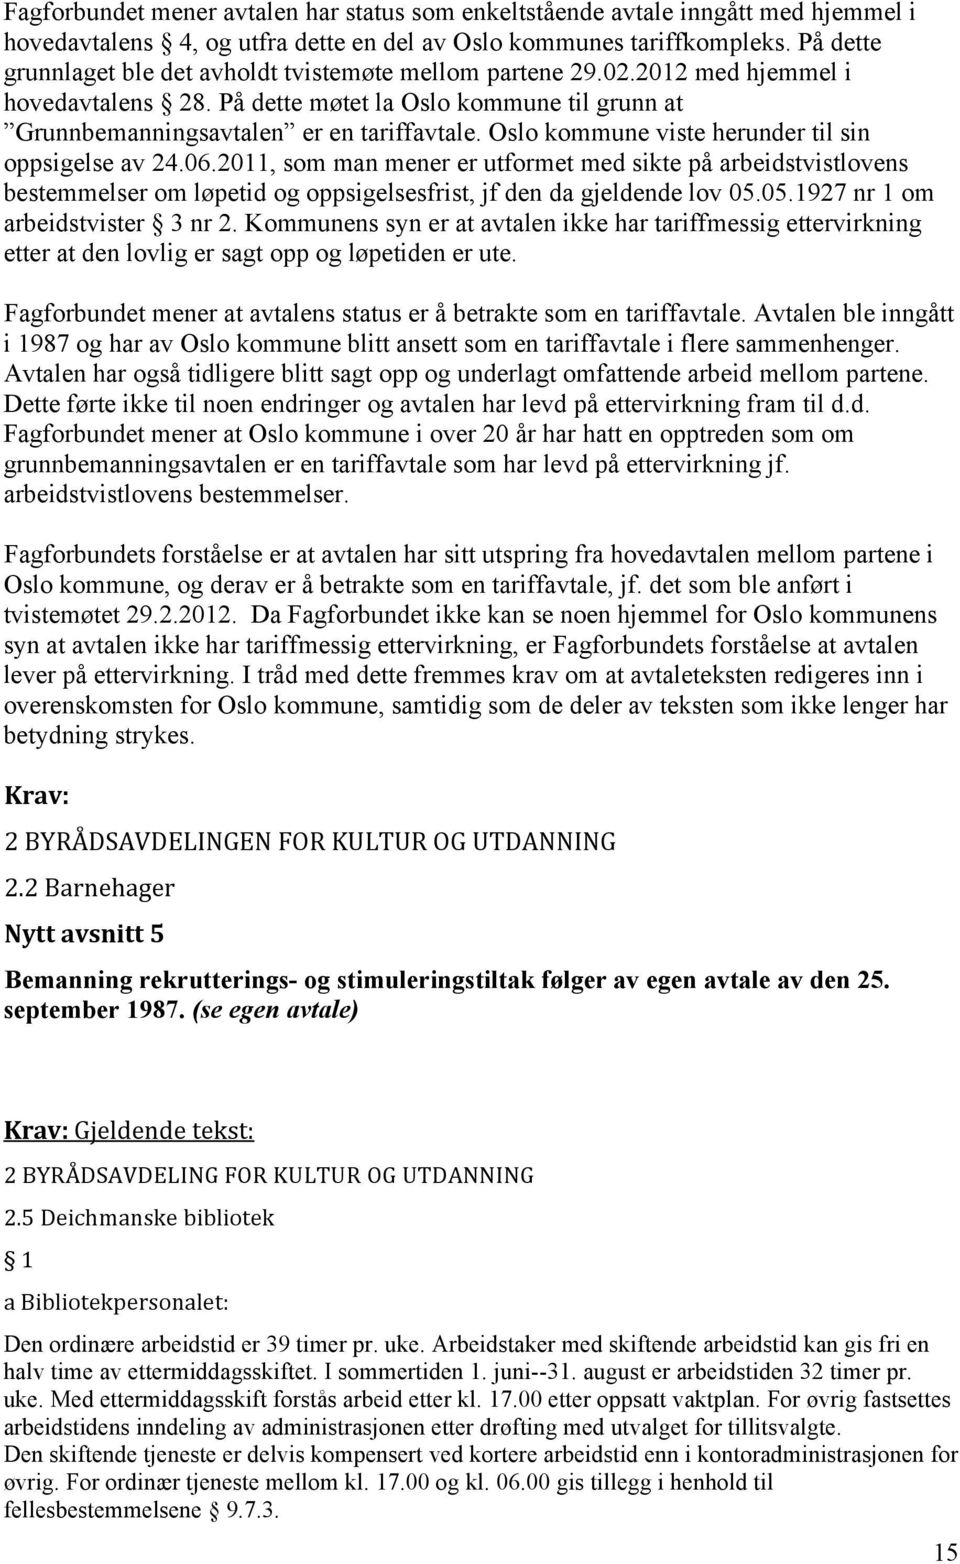 Oslo kommune viste herunder til sin oppsigelse av 24.06.2011, som man mener er utformet med sikte på arbeidstvistlovens bestemmelser om løpetid og oppsigelsesfrist, jf den da gjeldende lov 05.